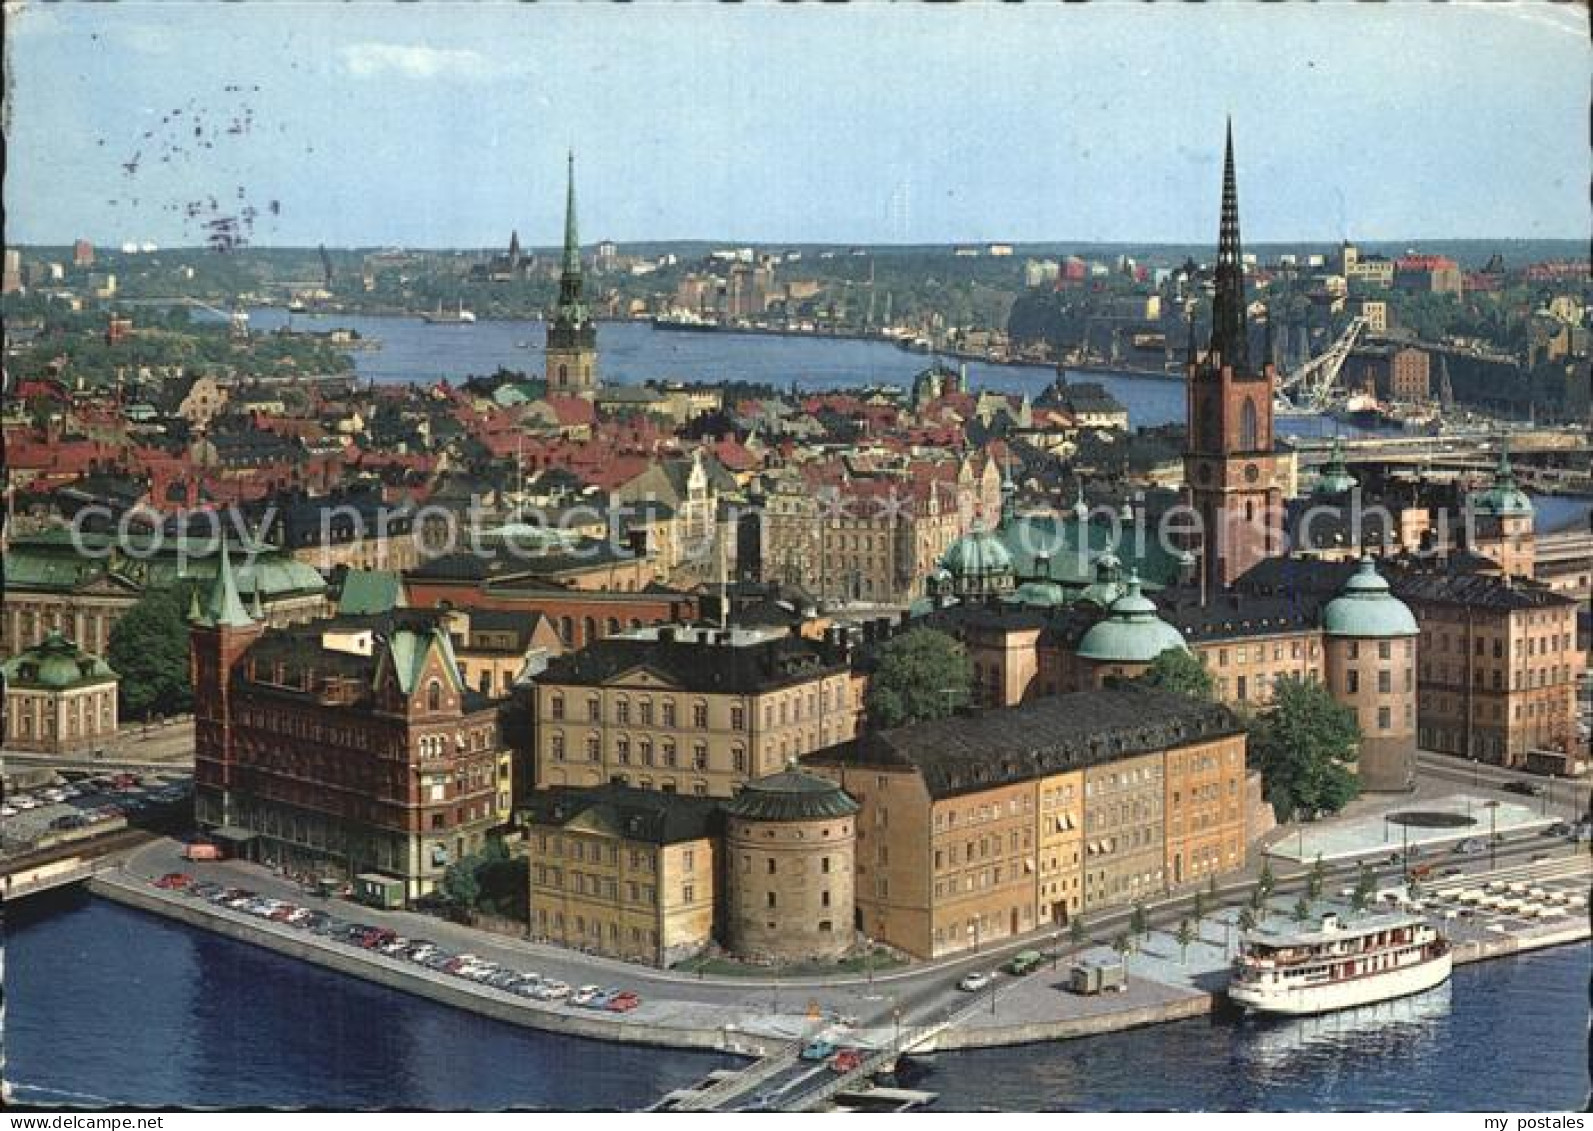 72501201 Stockholm Riddarholmen   - Suède